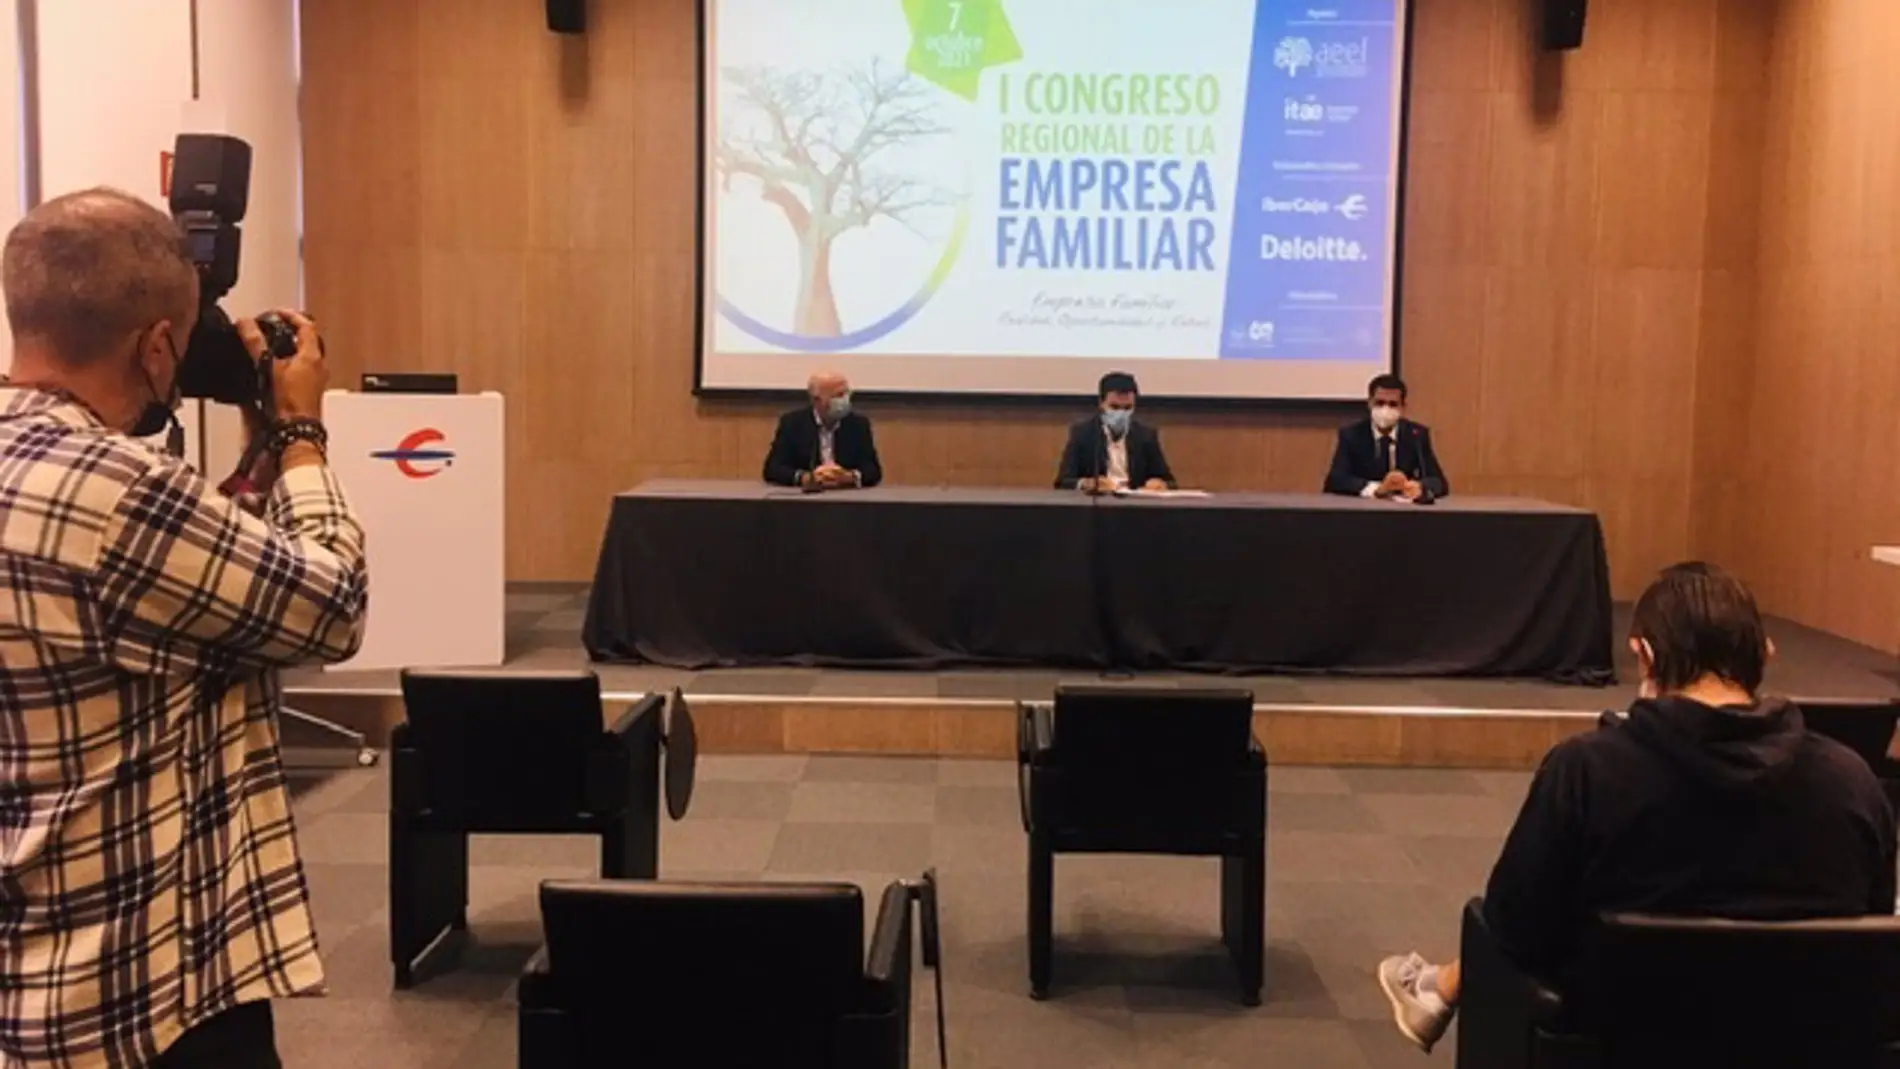 El I Congreso Regional de la Empresa Familiar se celebrará el 7 de octubre en Badajoz